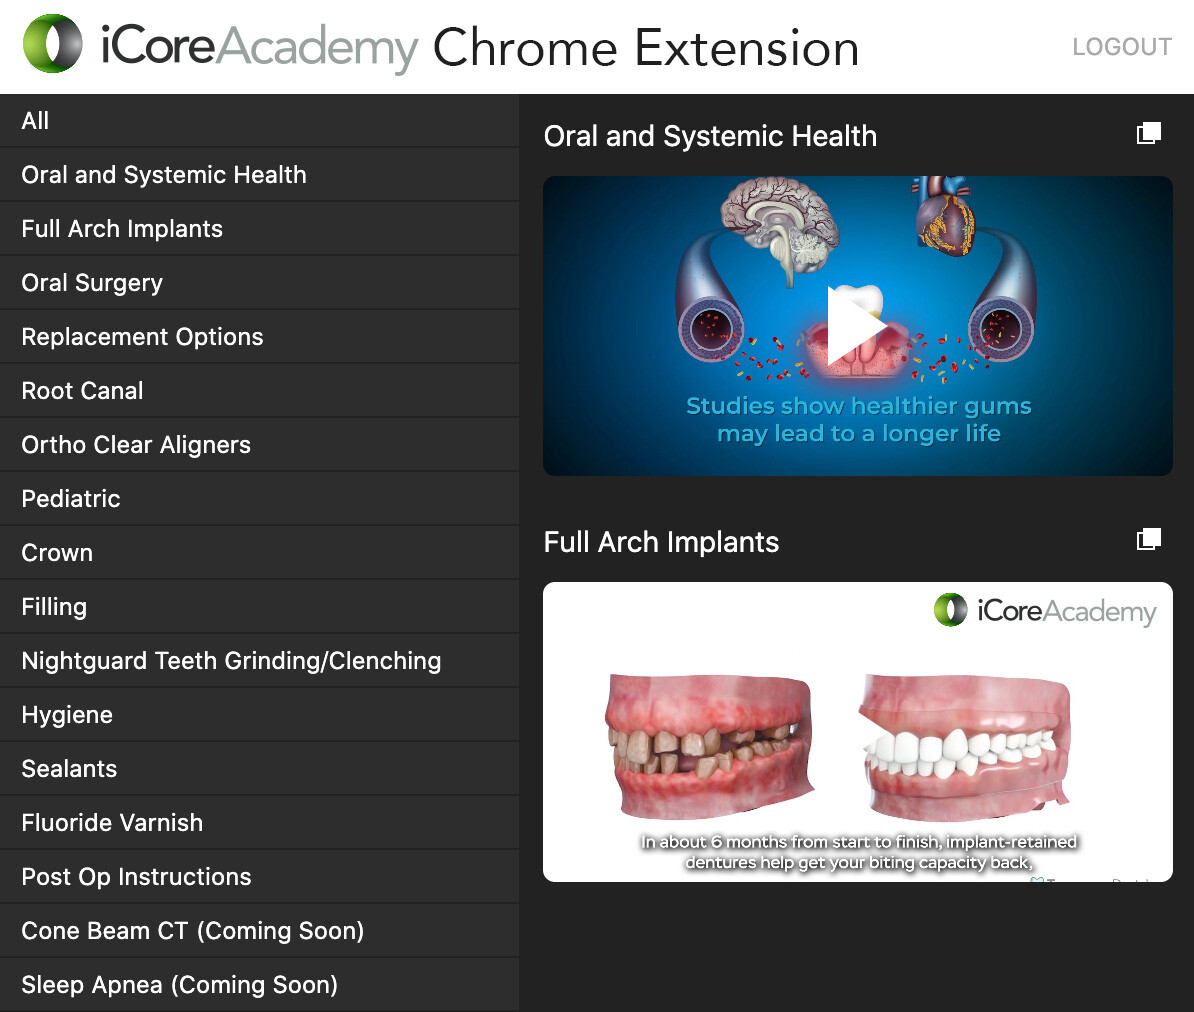 iCoreAcademy Chrome Extension